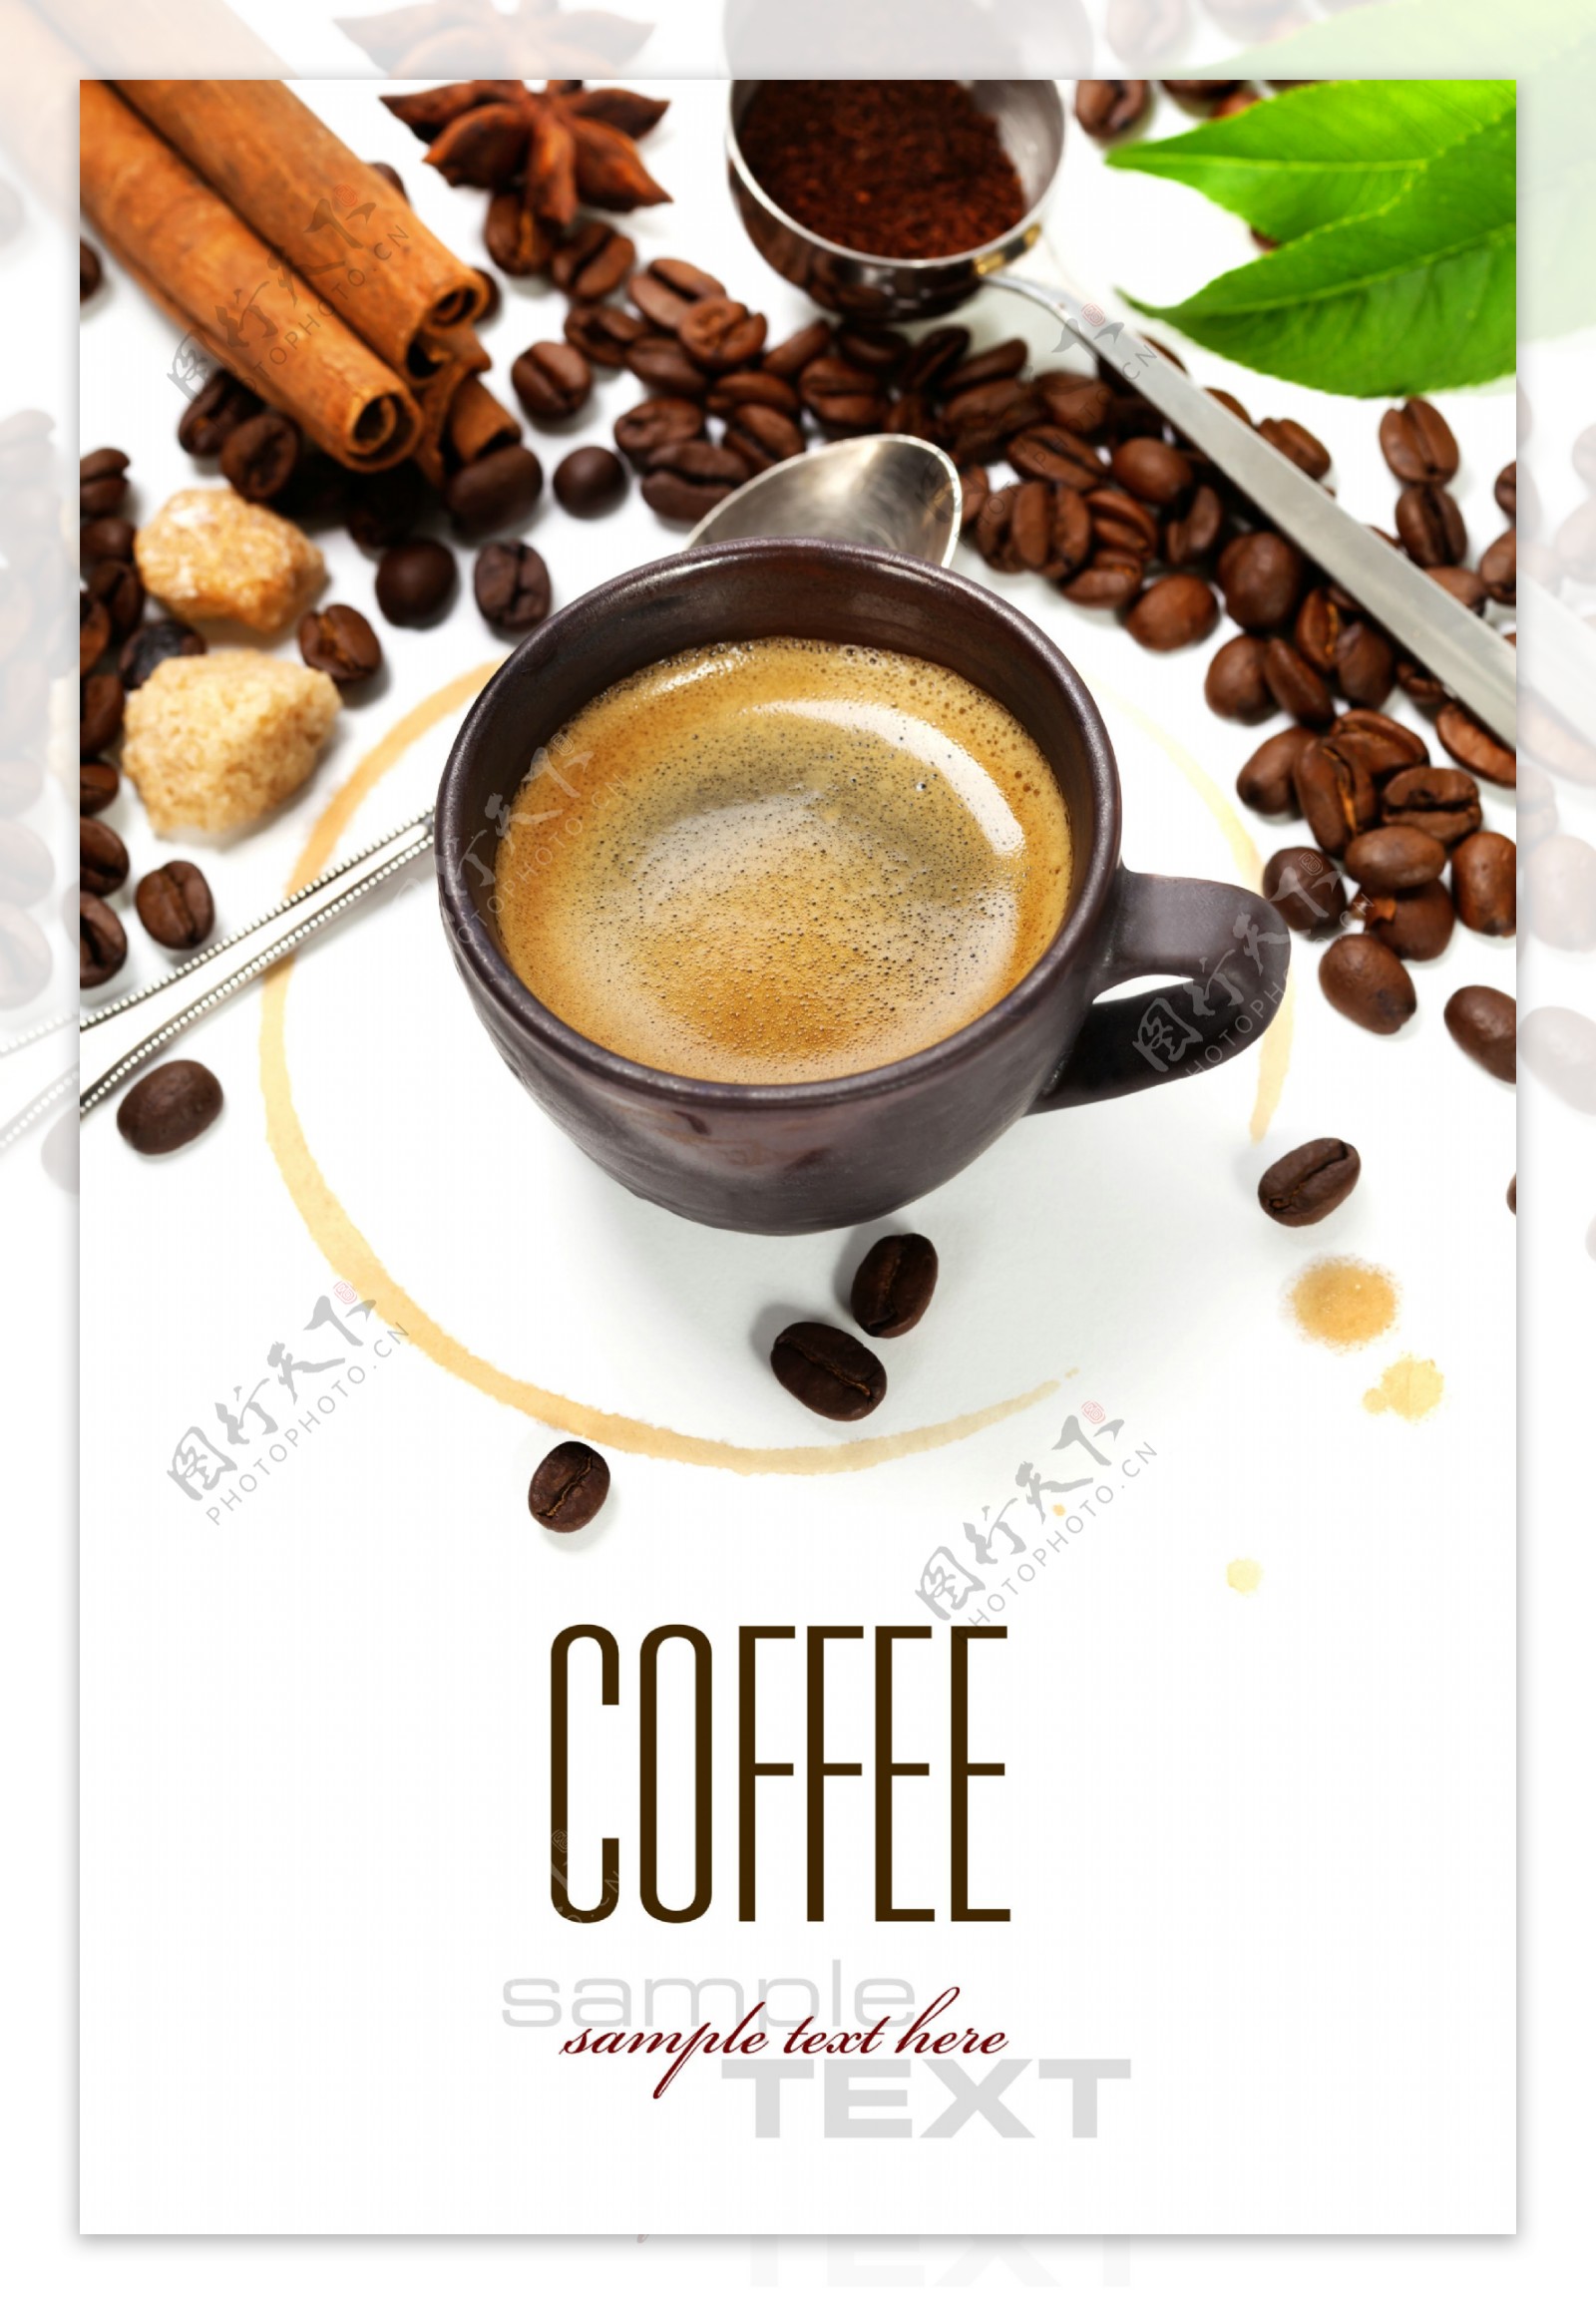 咖啡豆与咖啡杯子汤匙图片